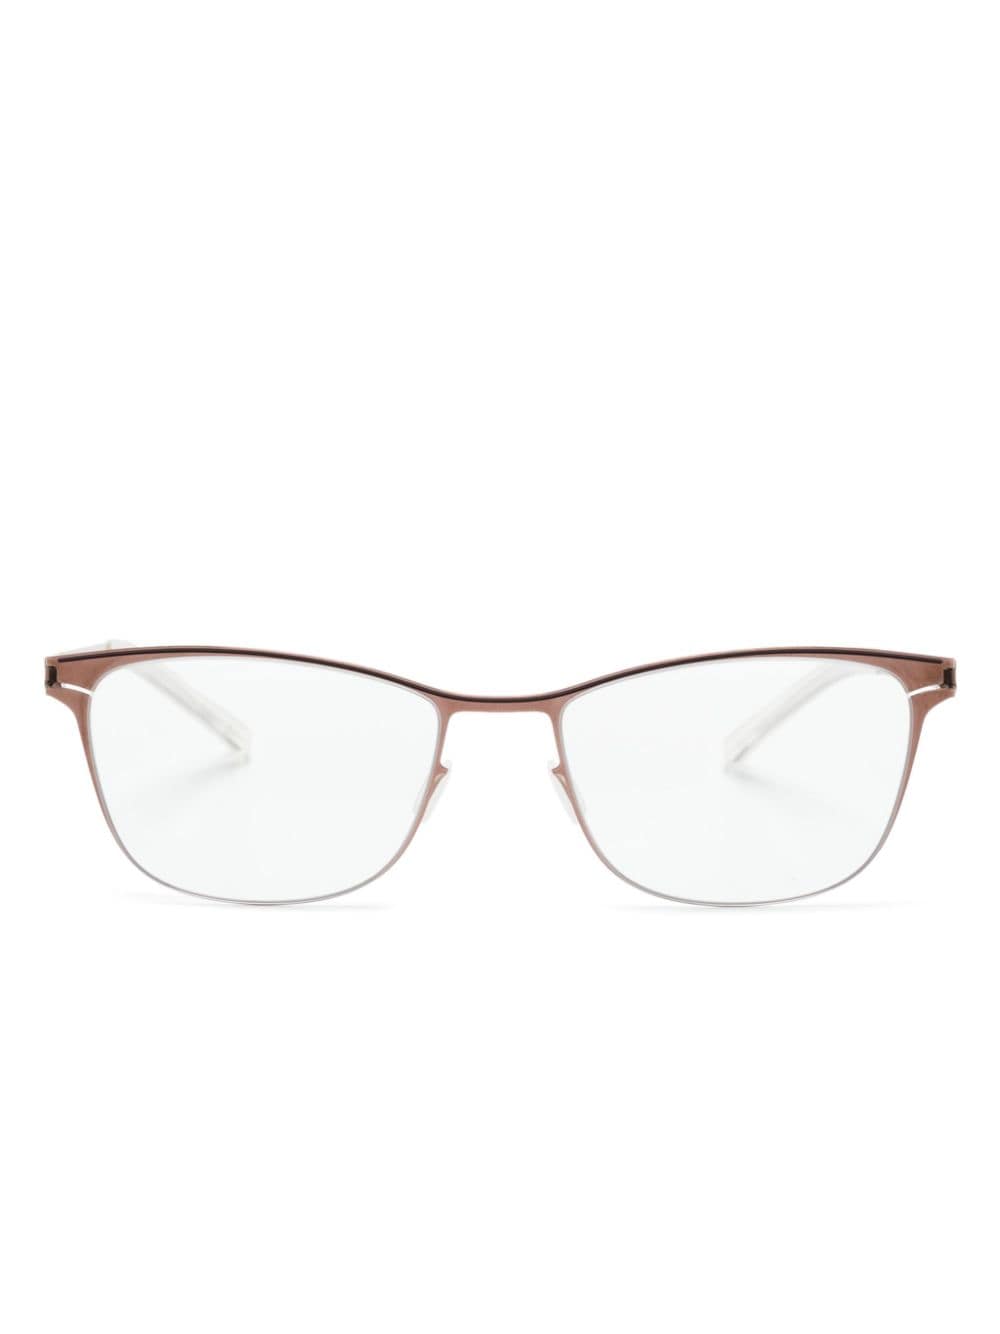 Mykita Romina Square-frame Glasses In Braun